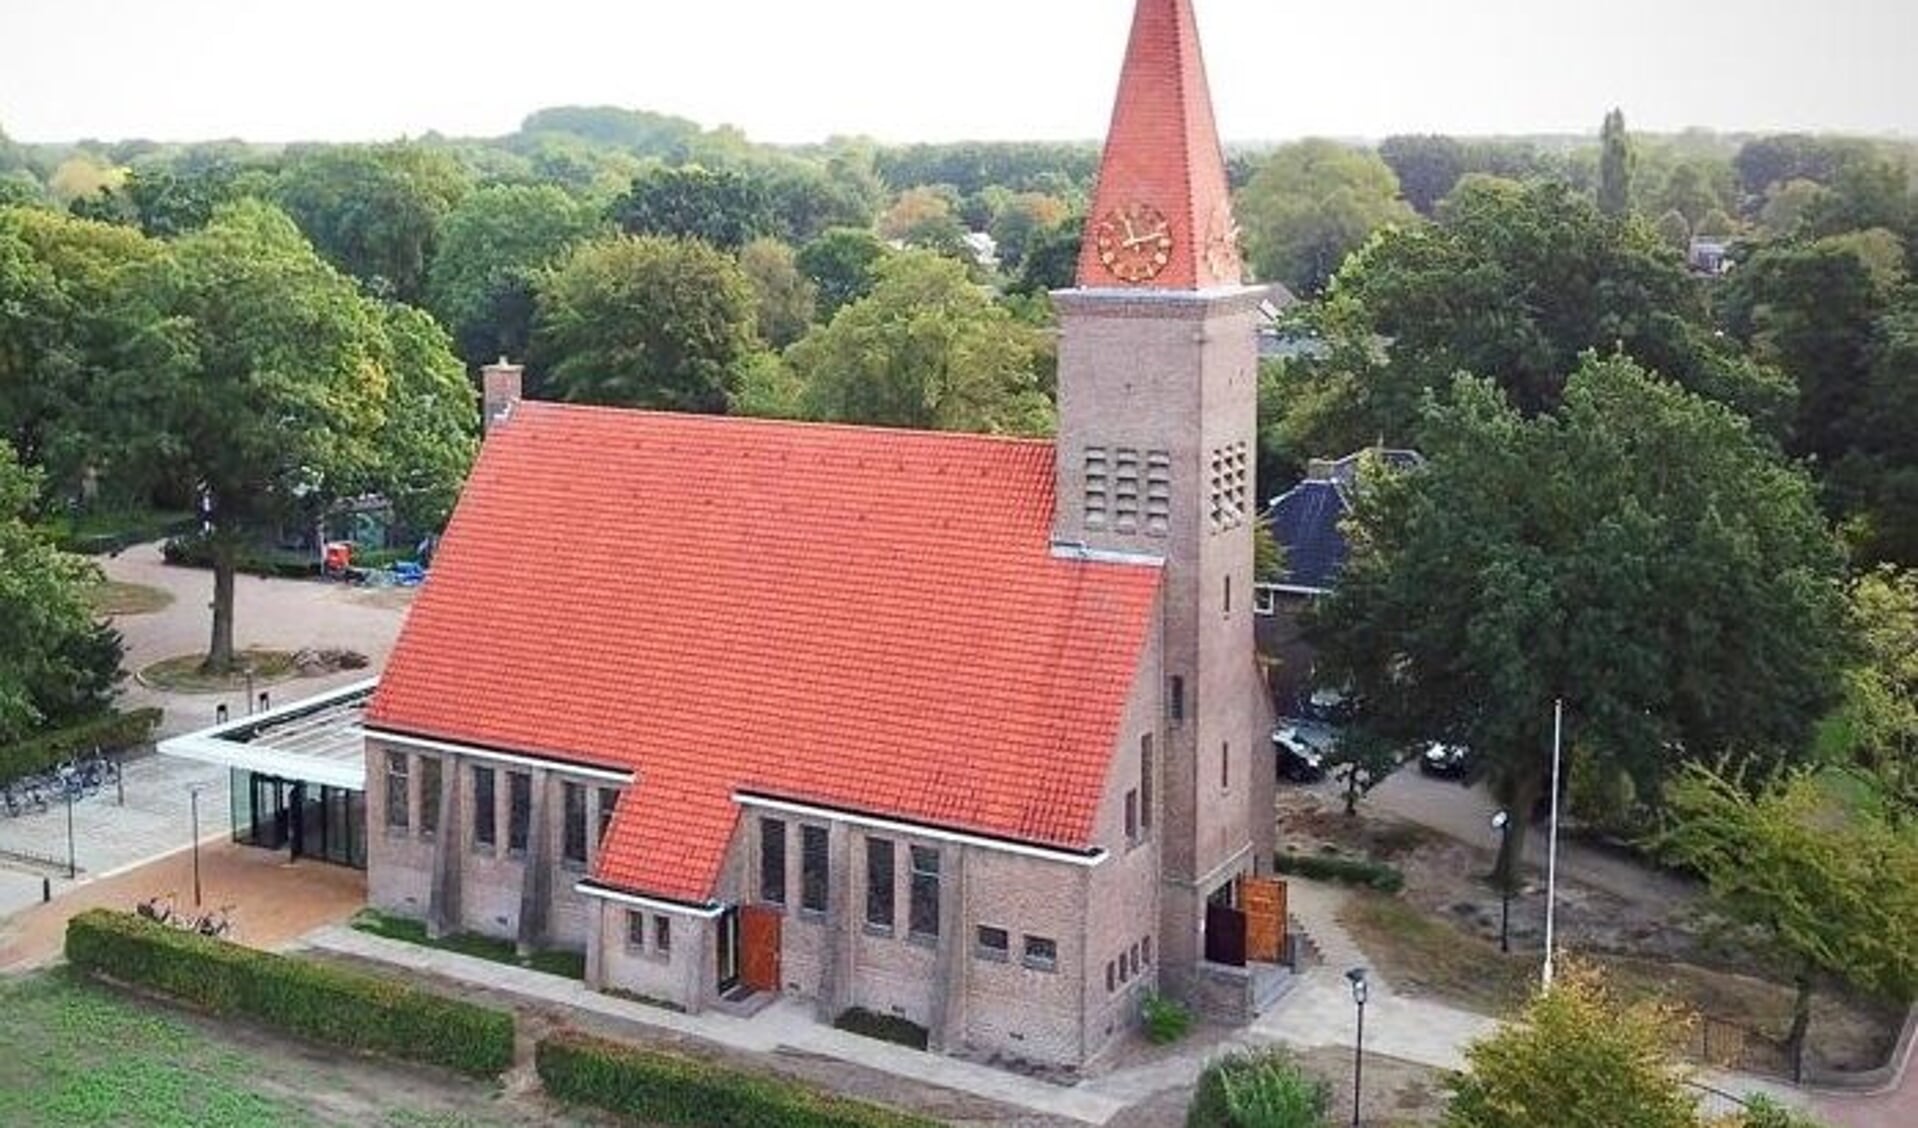 De Dorpskerk in Schoonebeek. Hier wordt volgende week de Vakantie Bijbelclub gehouden.